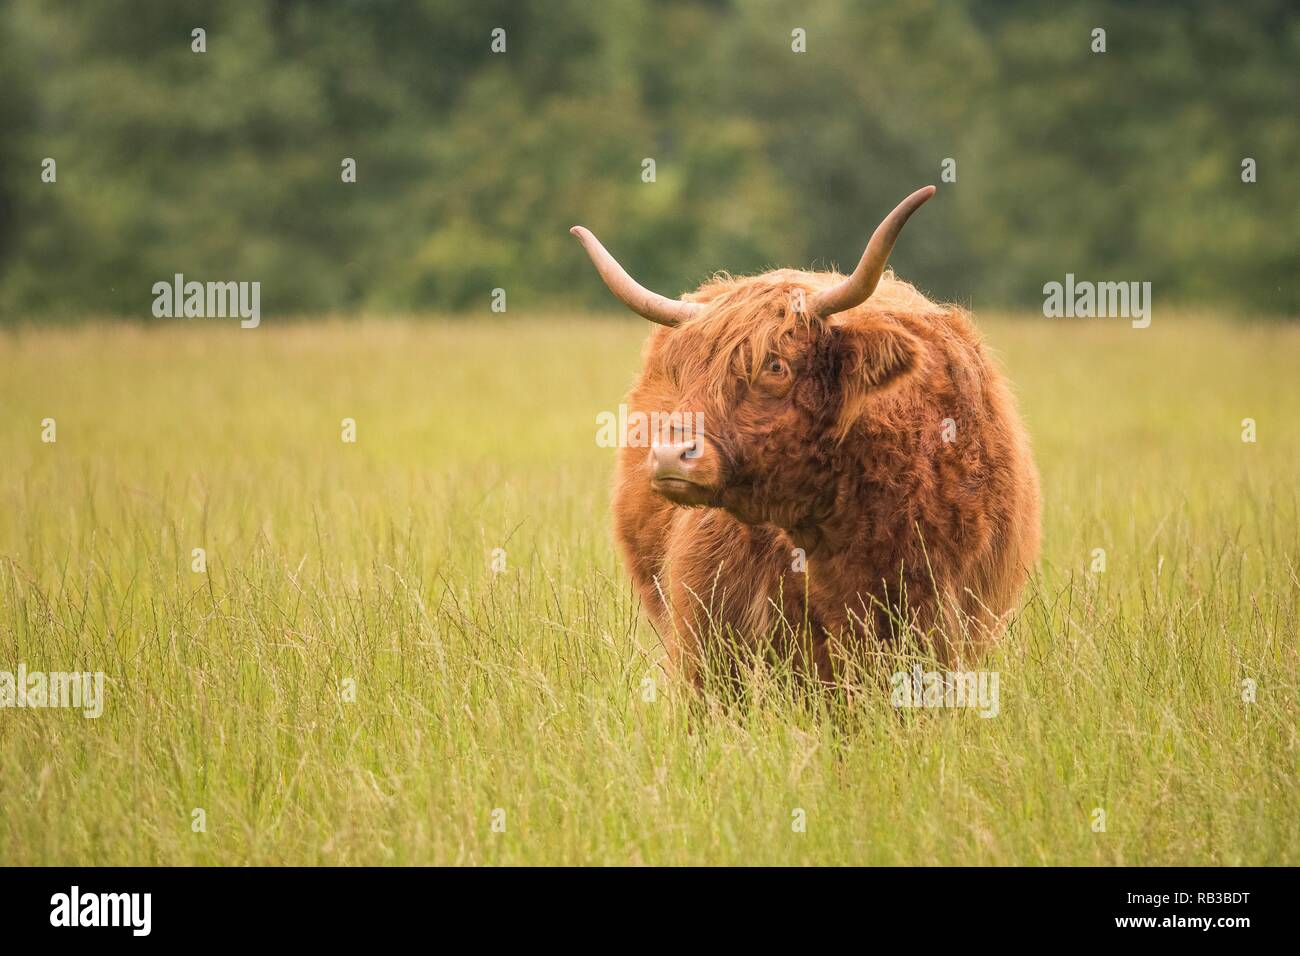 Highland vache dans un champ vert Banque D'Images